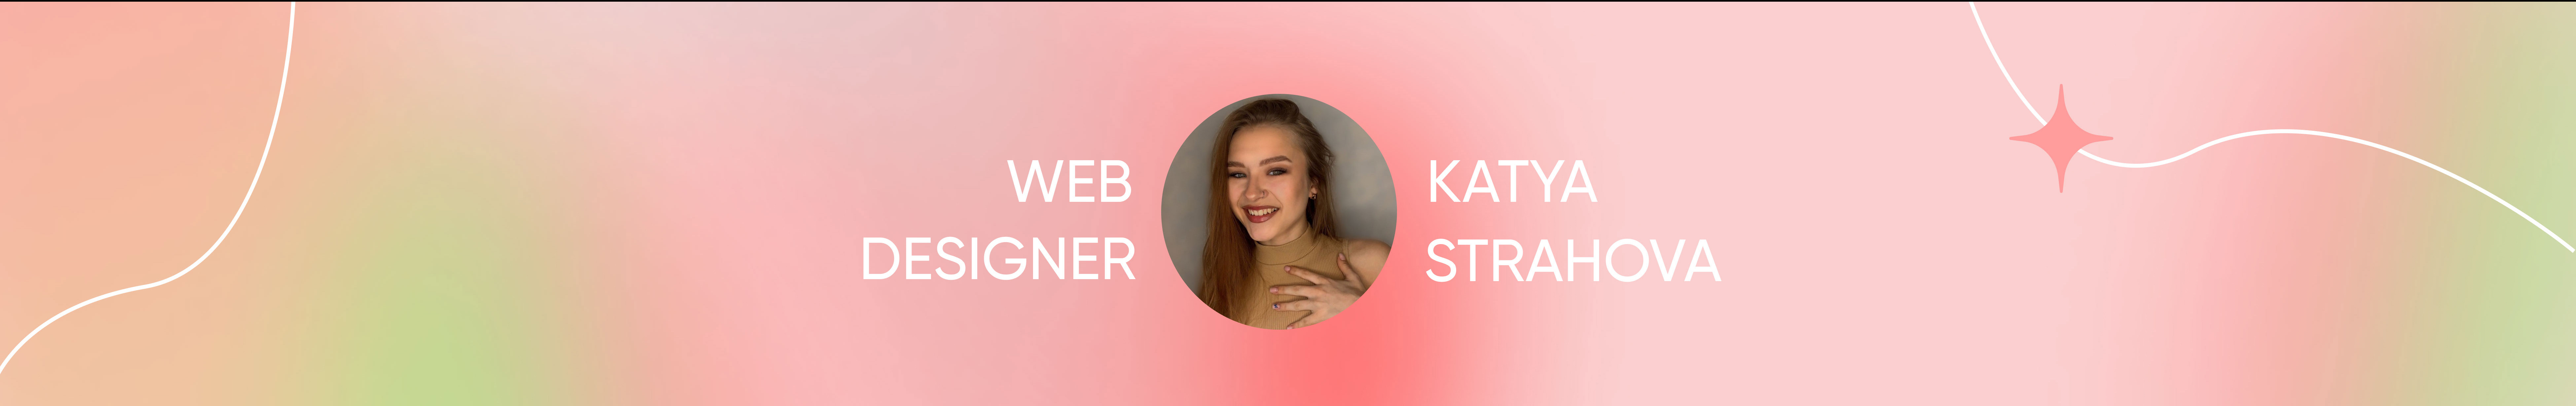 Katya Strahova's profile banner